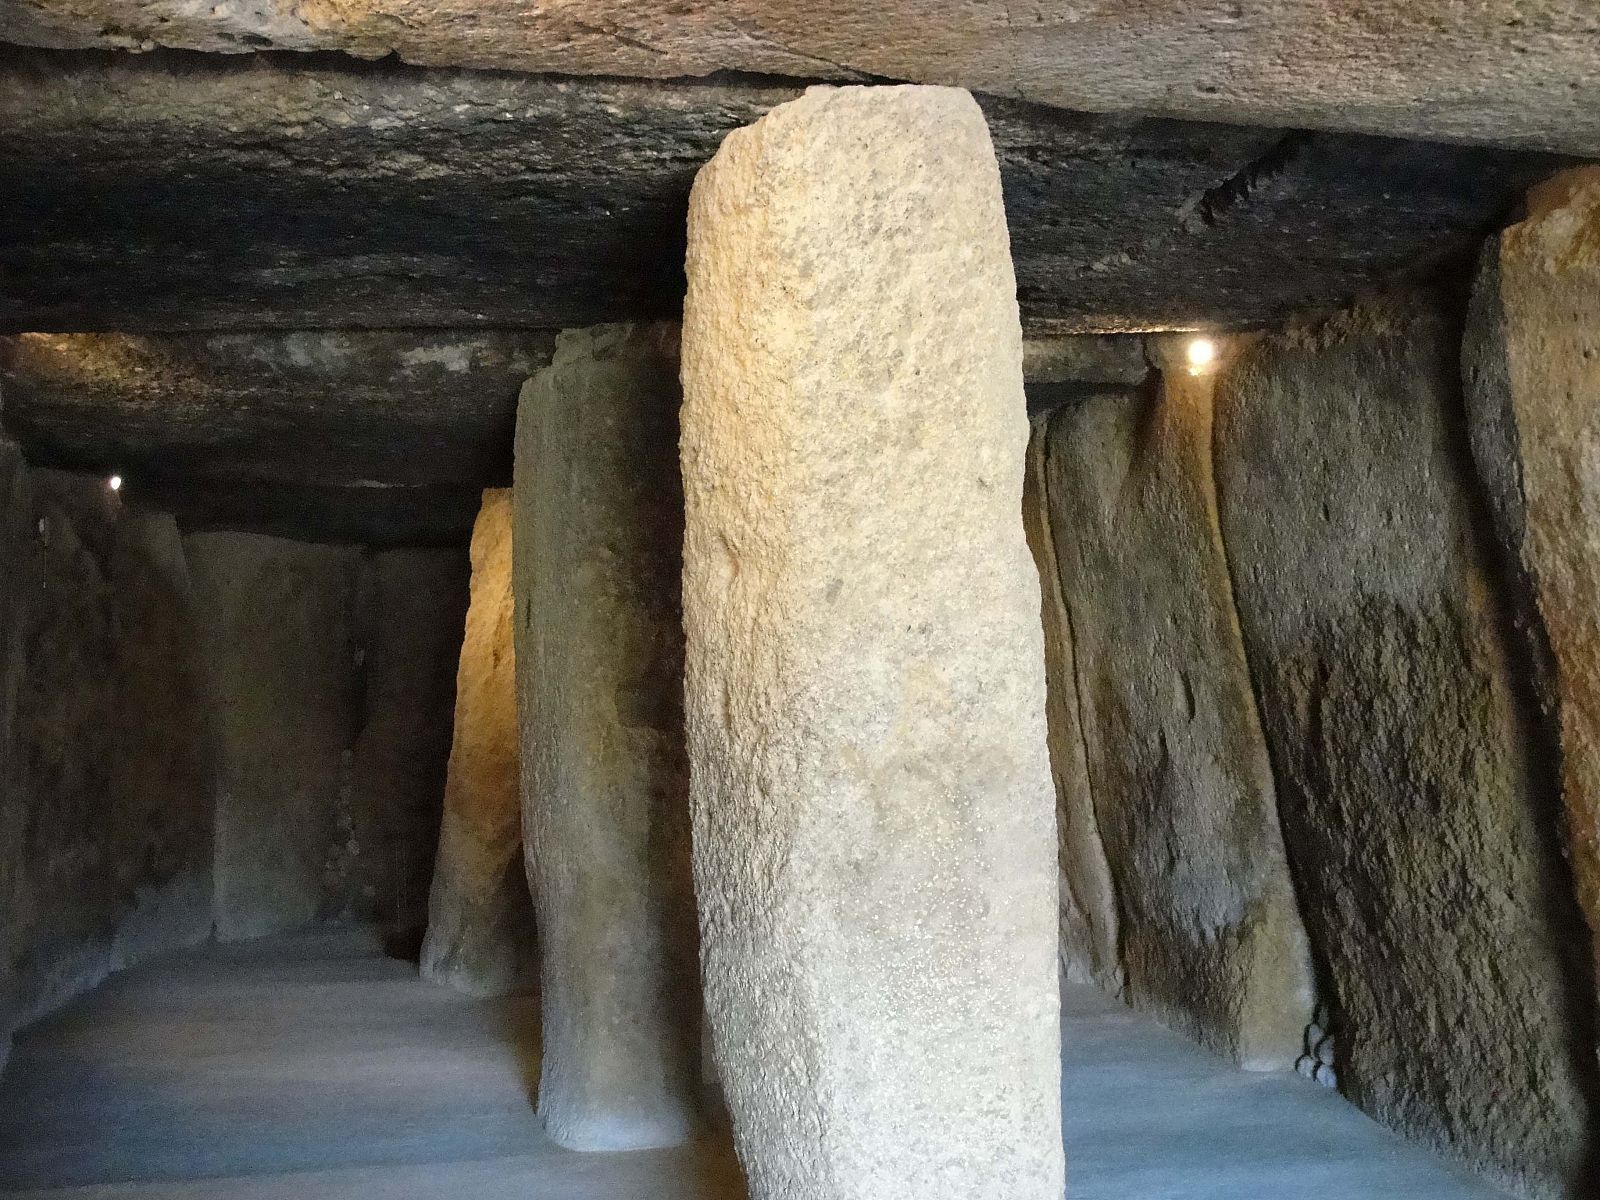 'Crónicas' se adentra en uno de los complejos megalíticos más grandes de Europa; en la imagen, el interior del dolmen de Menga